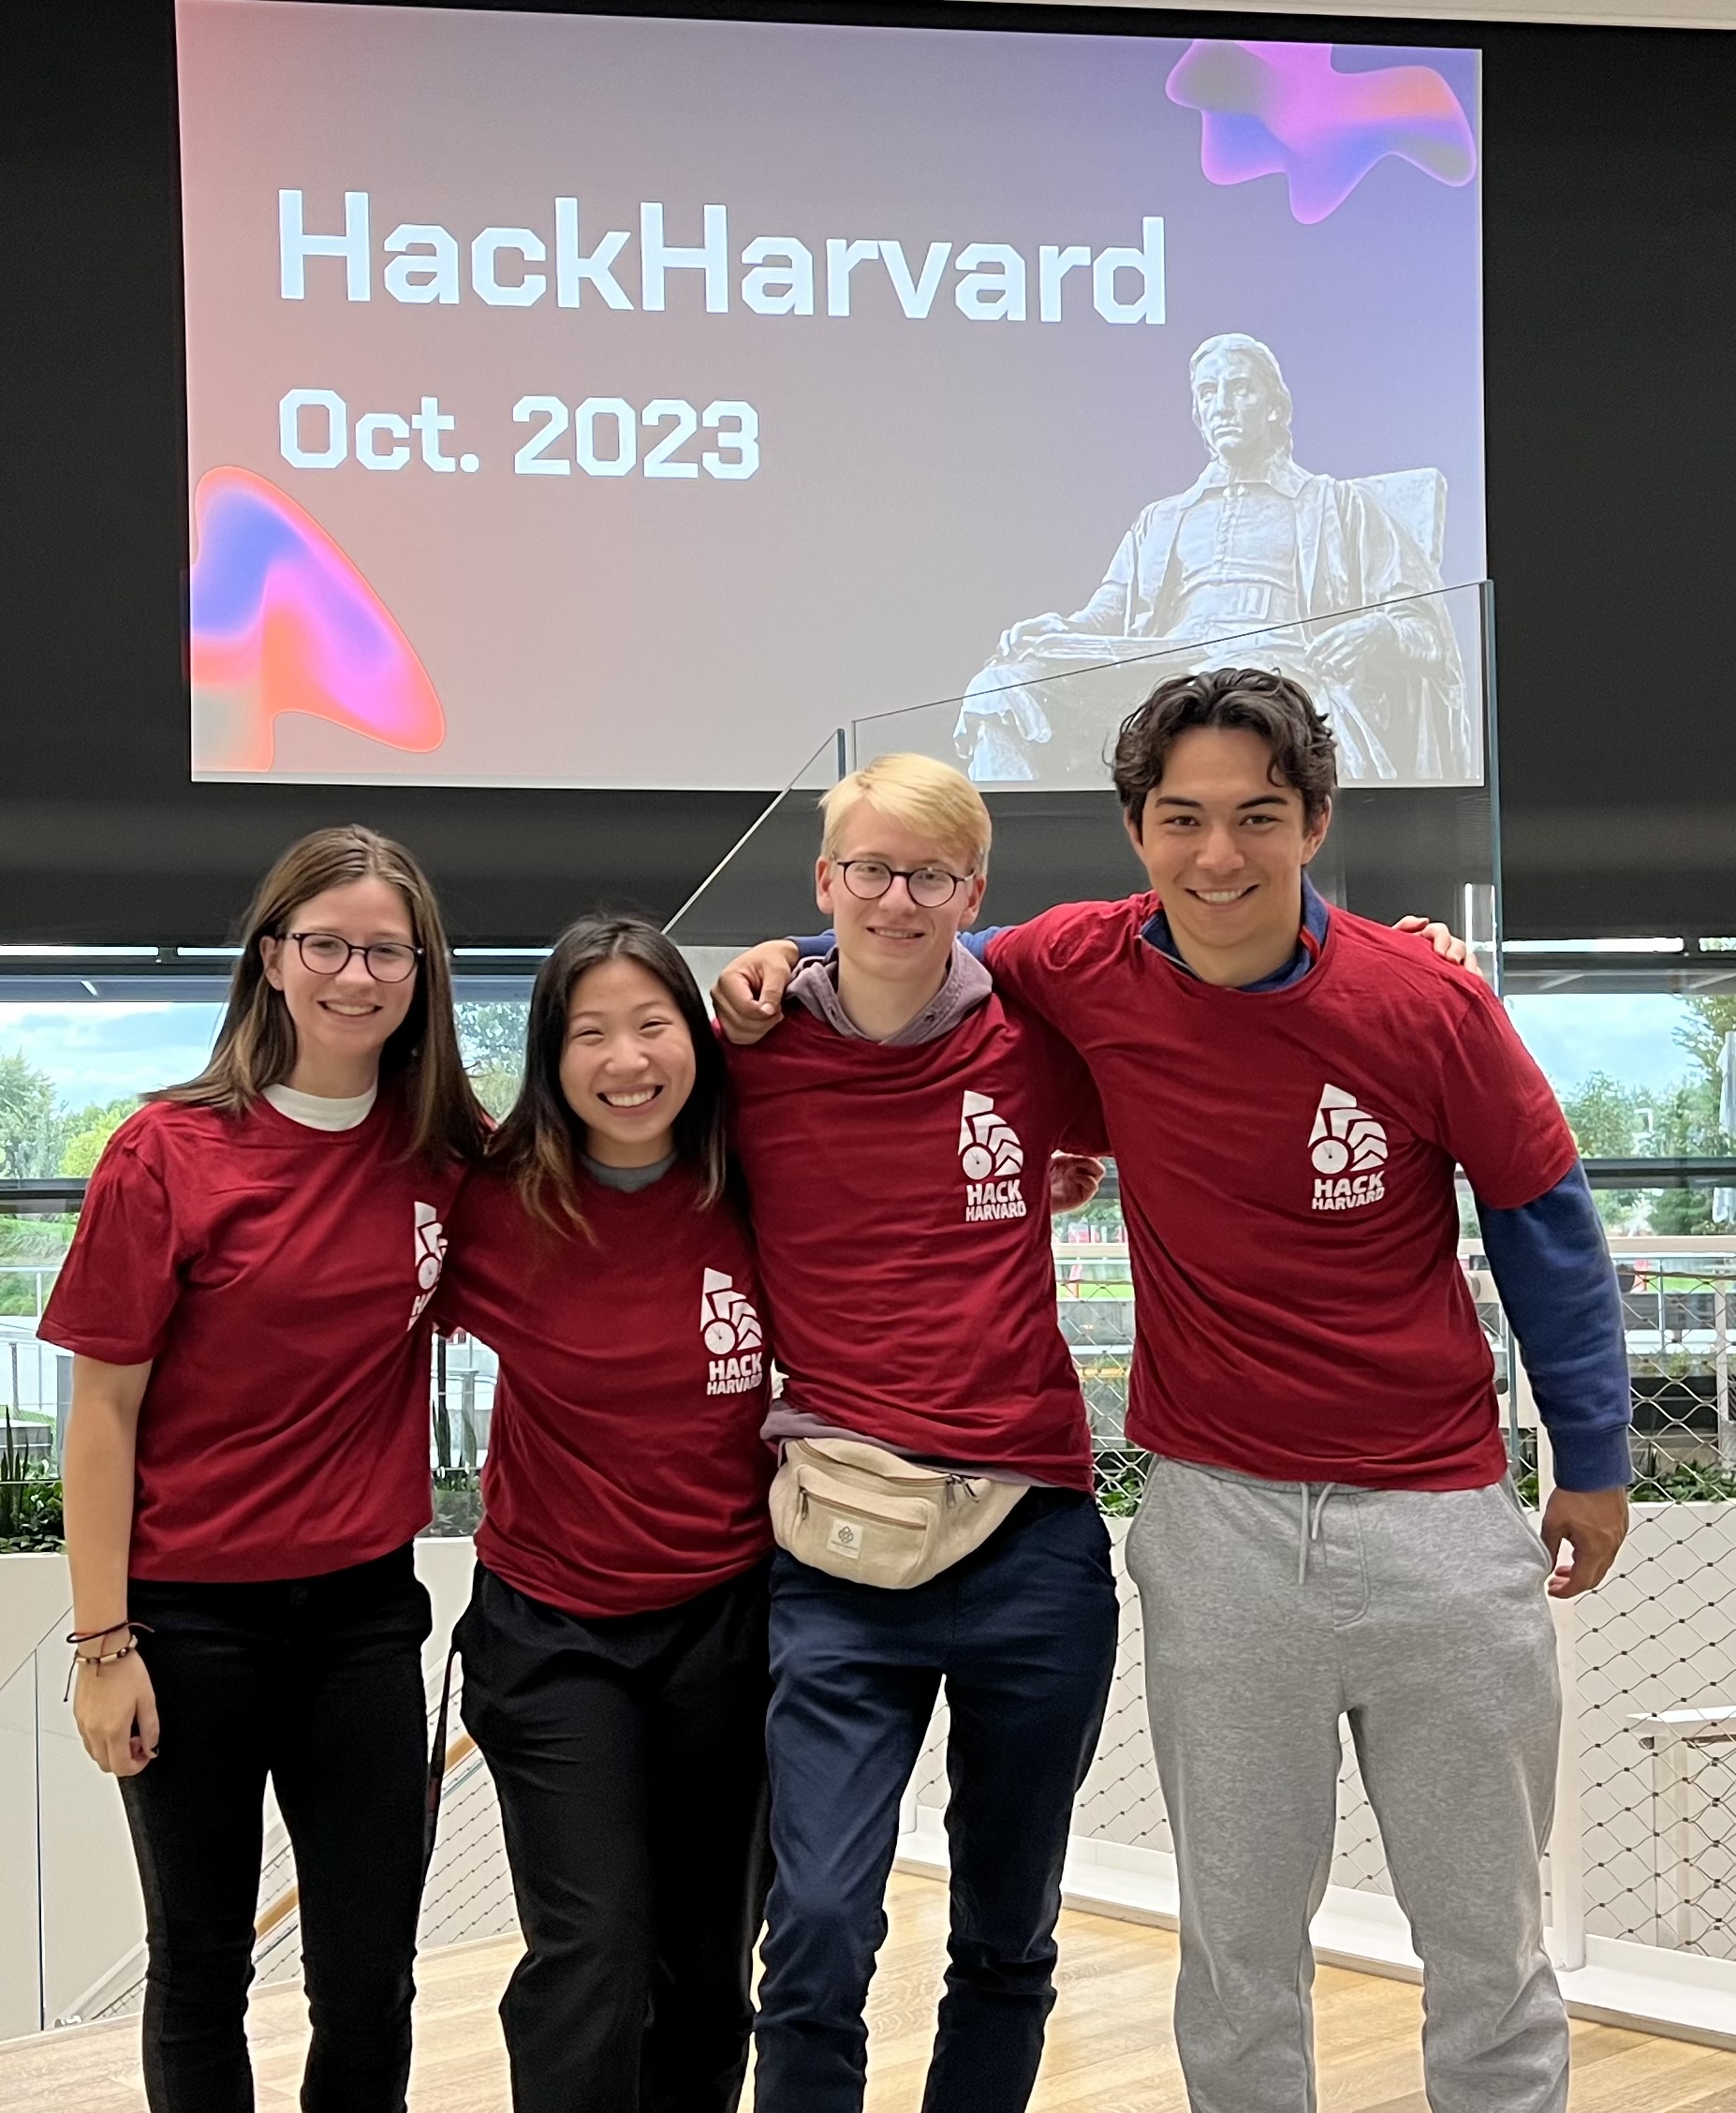 From l-r: CC computer science students Kylie Bogar '27, Primera Hour '25, David Prelinger '25, and Ronan Takizawa '26 pose at Harvard Hackathon. Photo provided by Ronan Takizawa